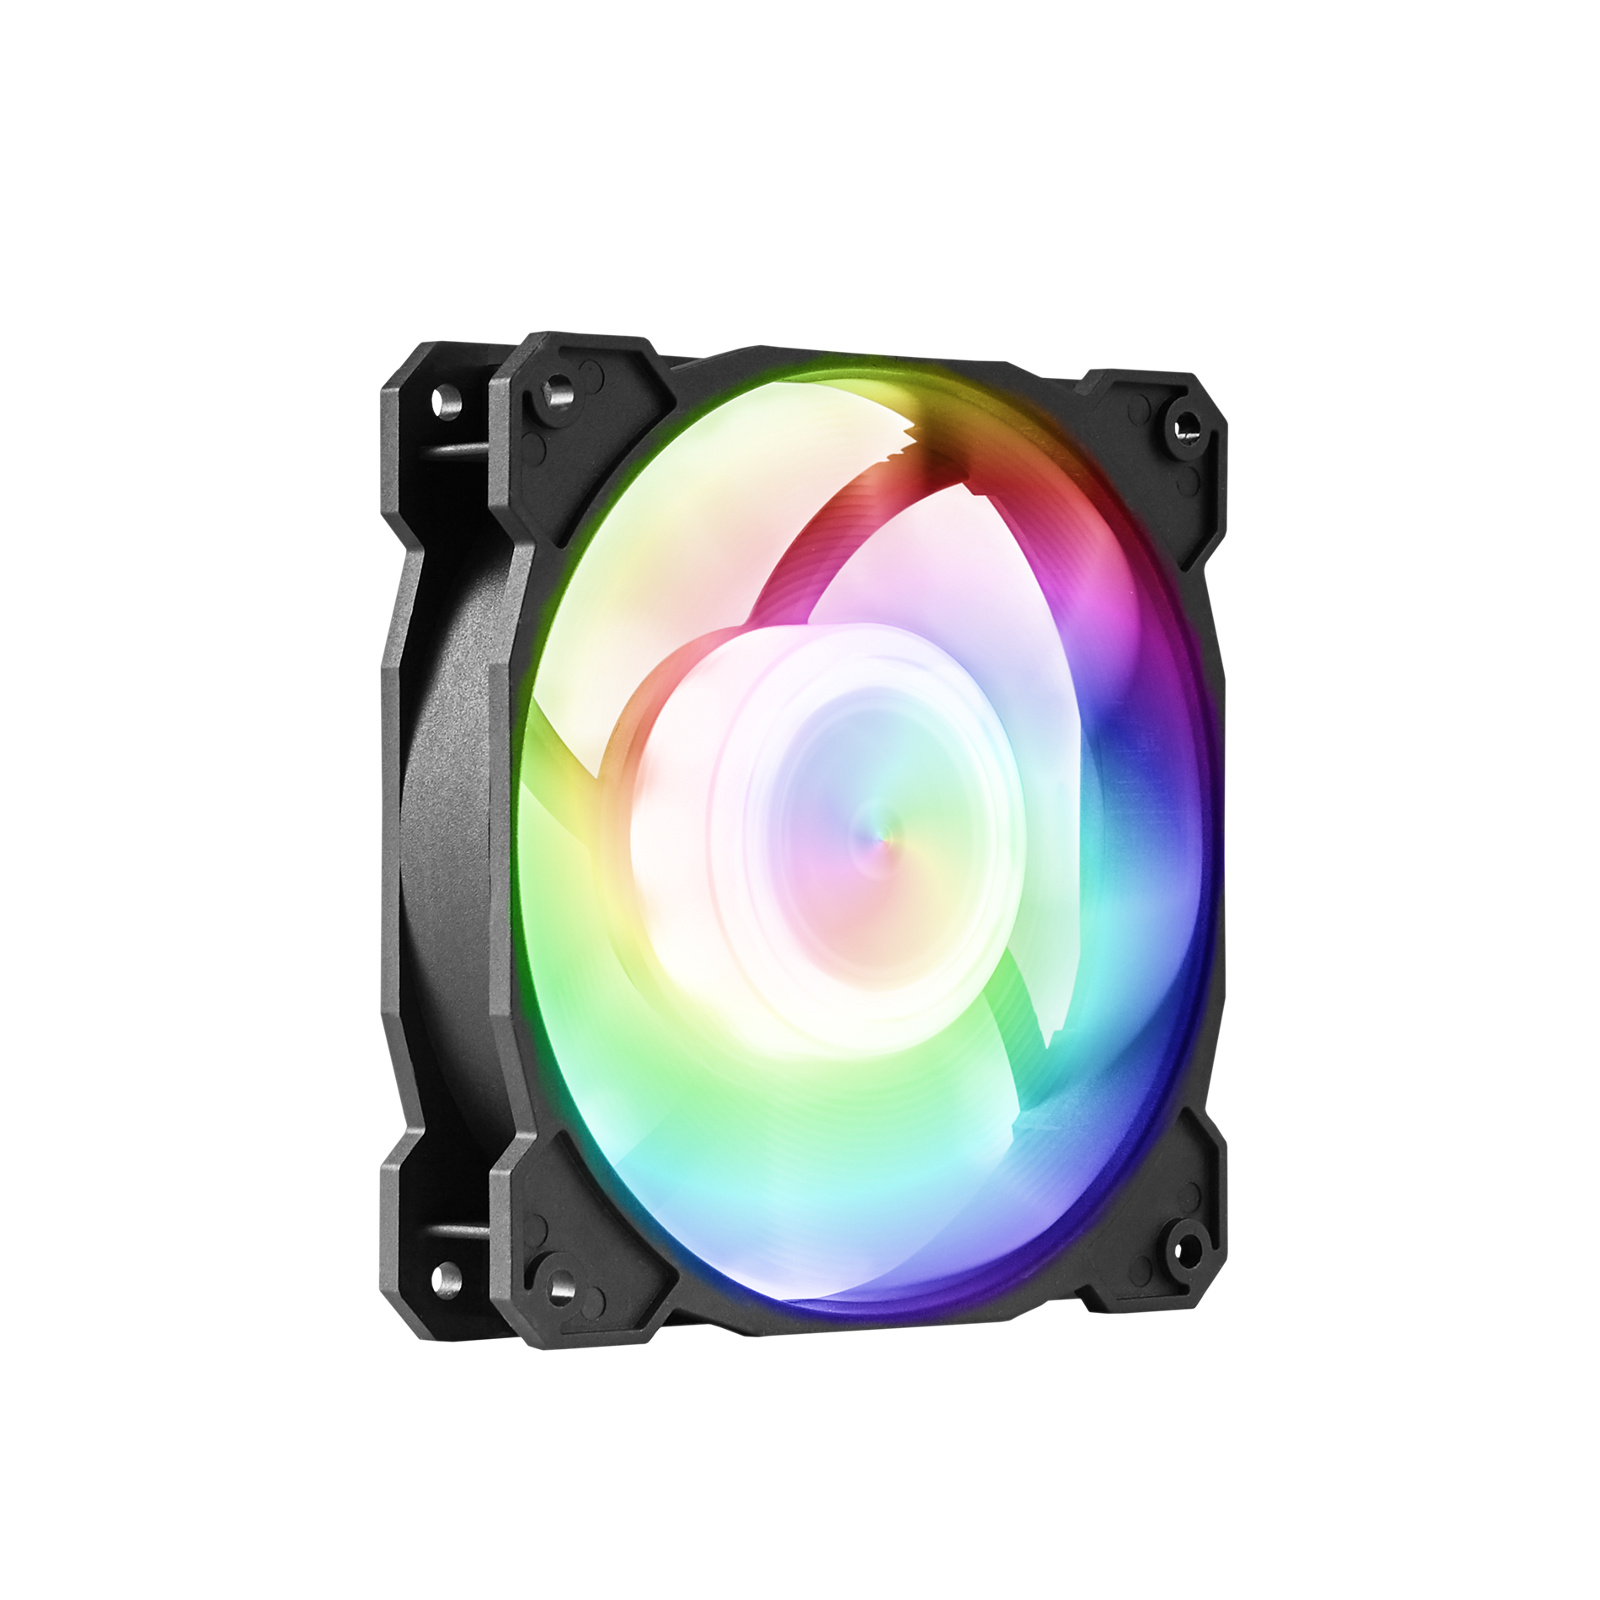 Gelid CODI6 ARGB Controller Bundle incl. 3 RGB fans FC-CODI6-B